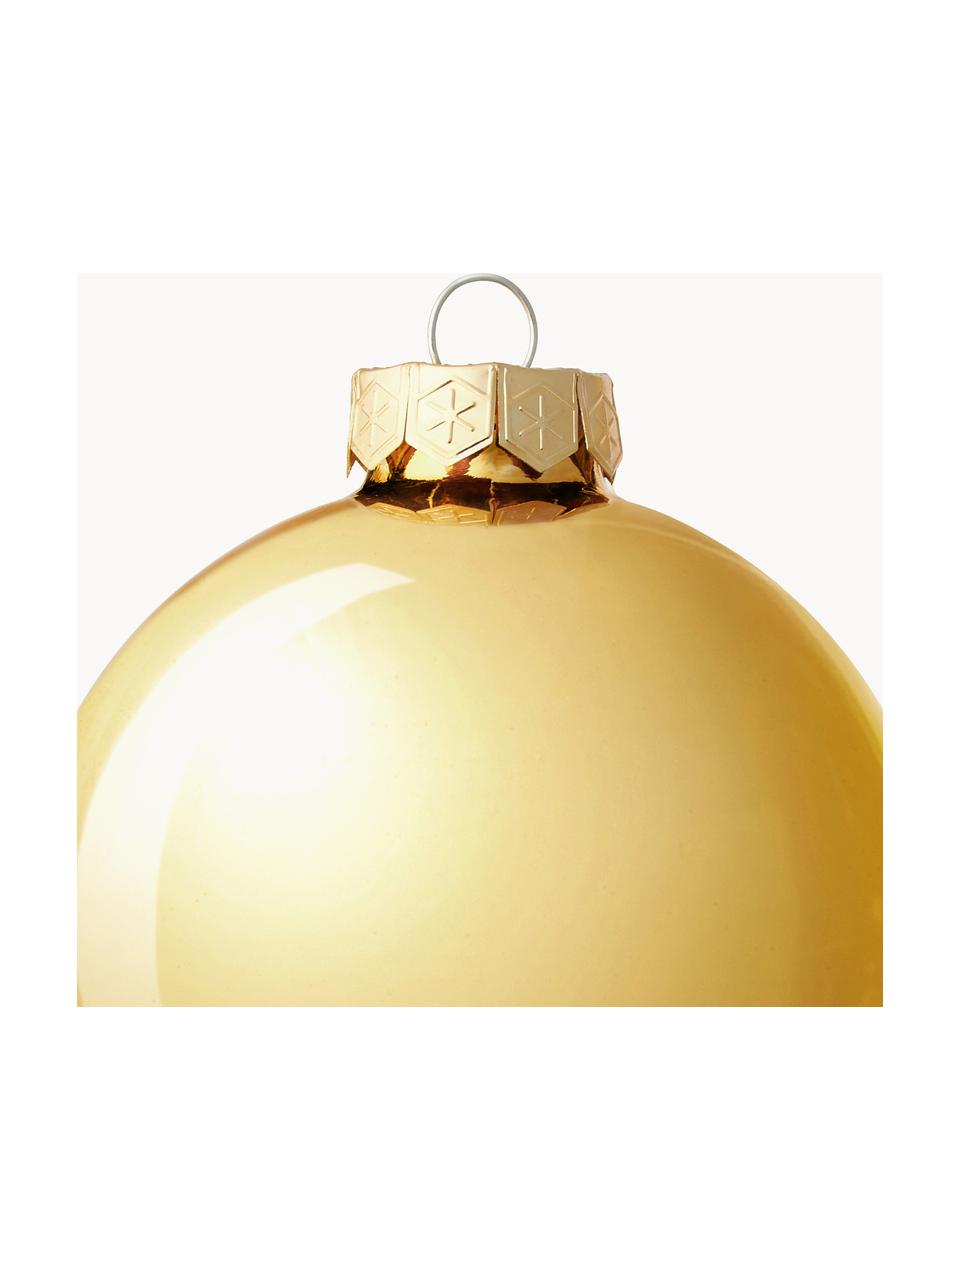 Sada vánočních ozdob lesklých/matných Evergreen, různé velikosti, Zlatá, Ø 10 cm, 4 ks